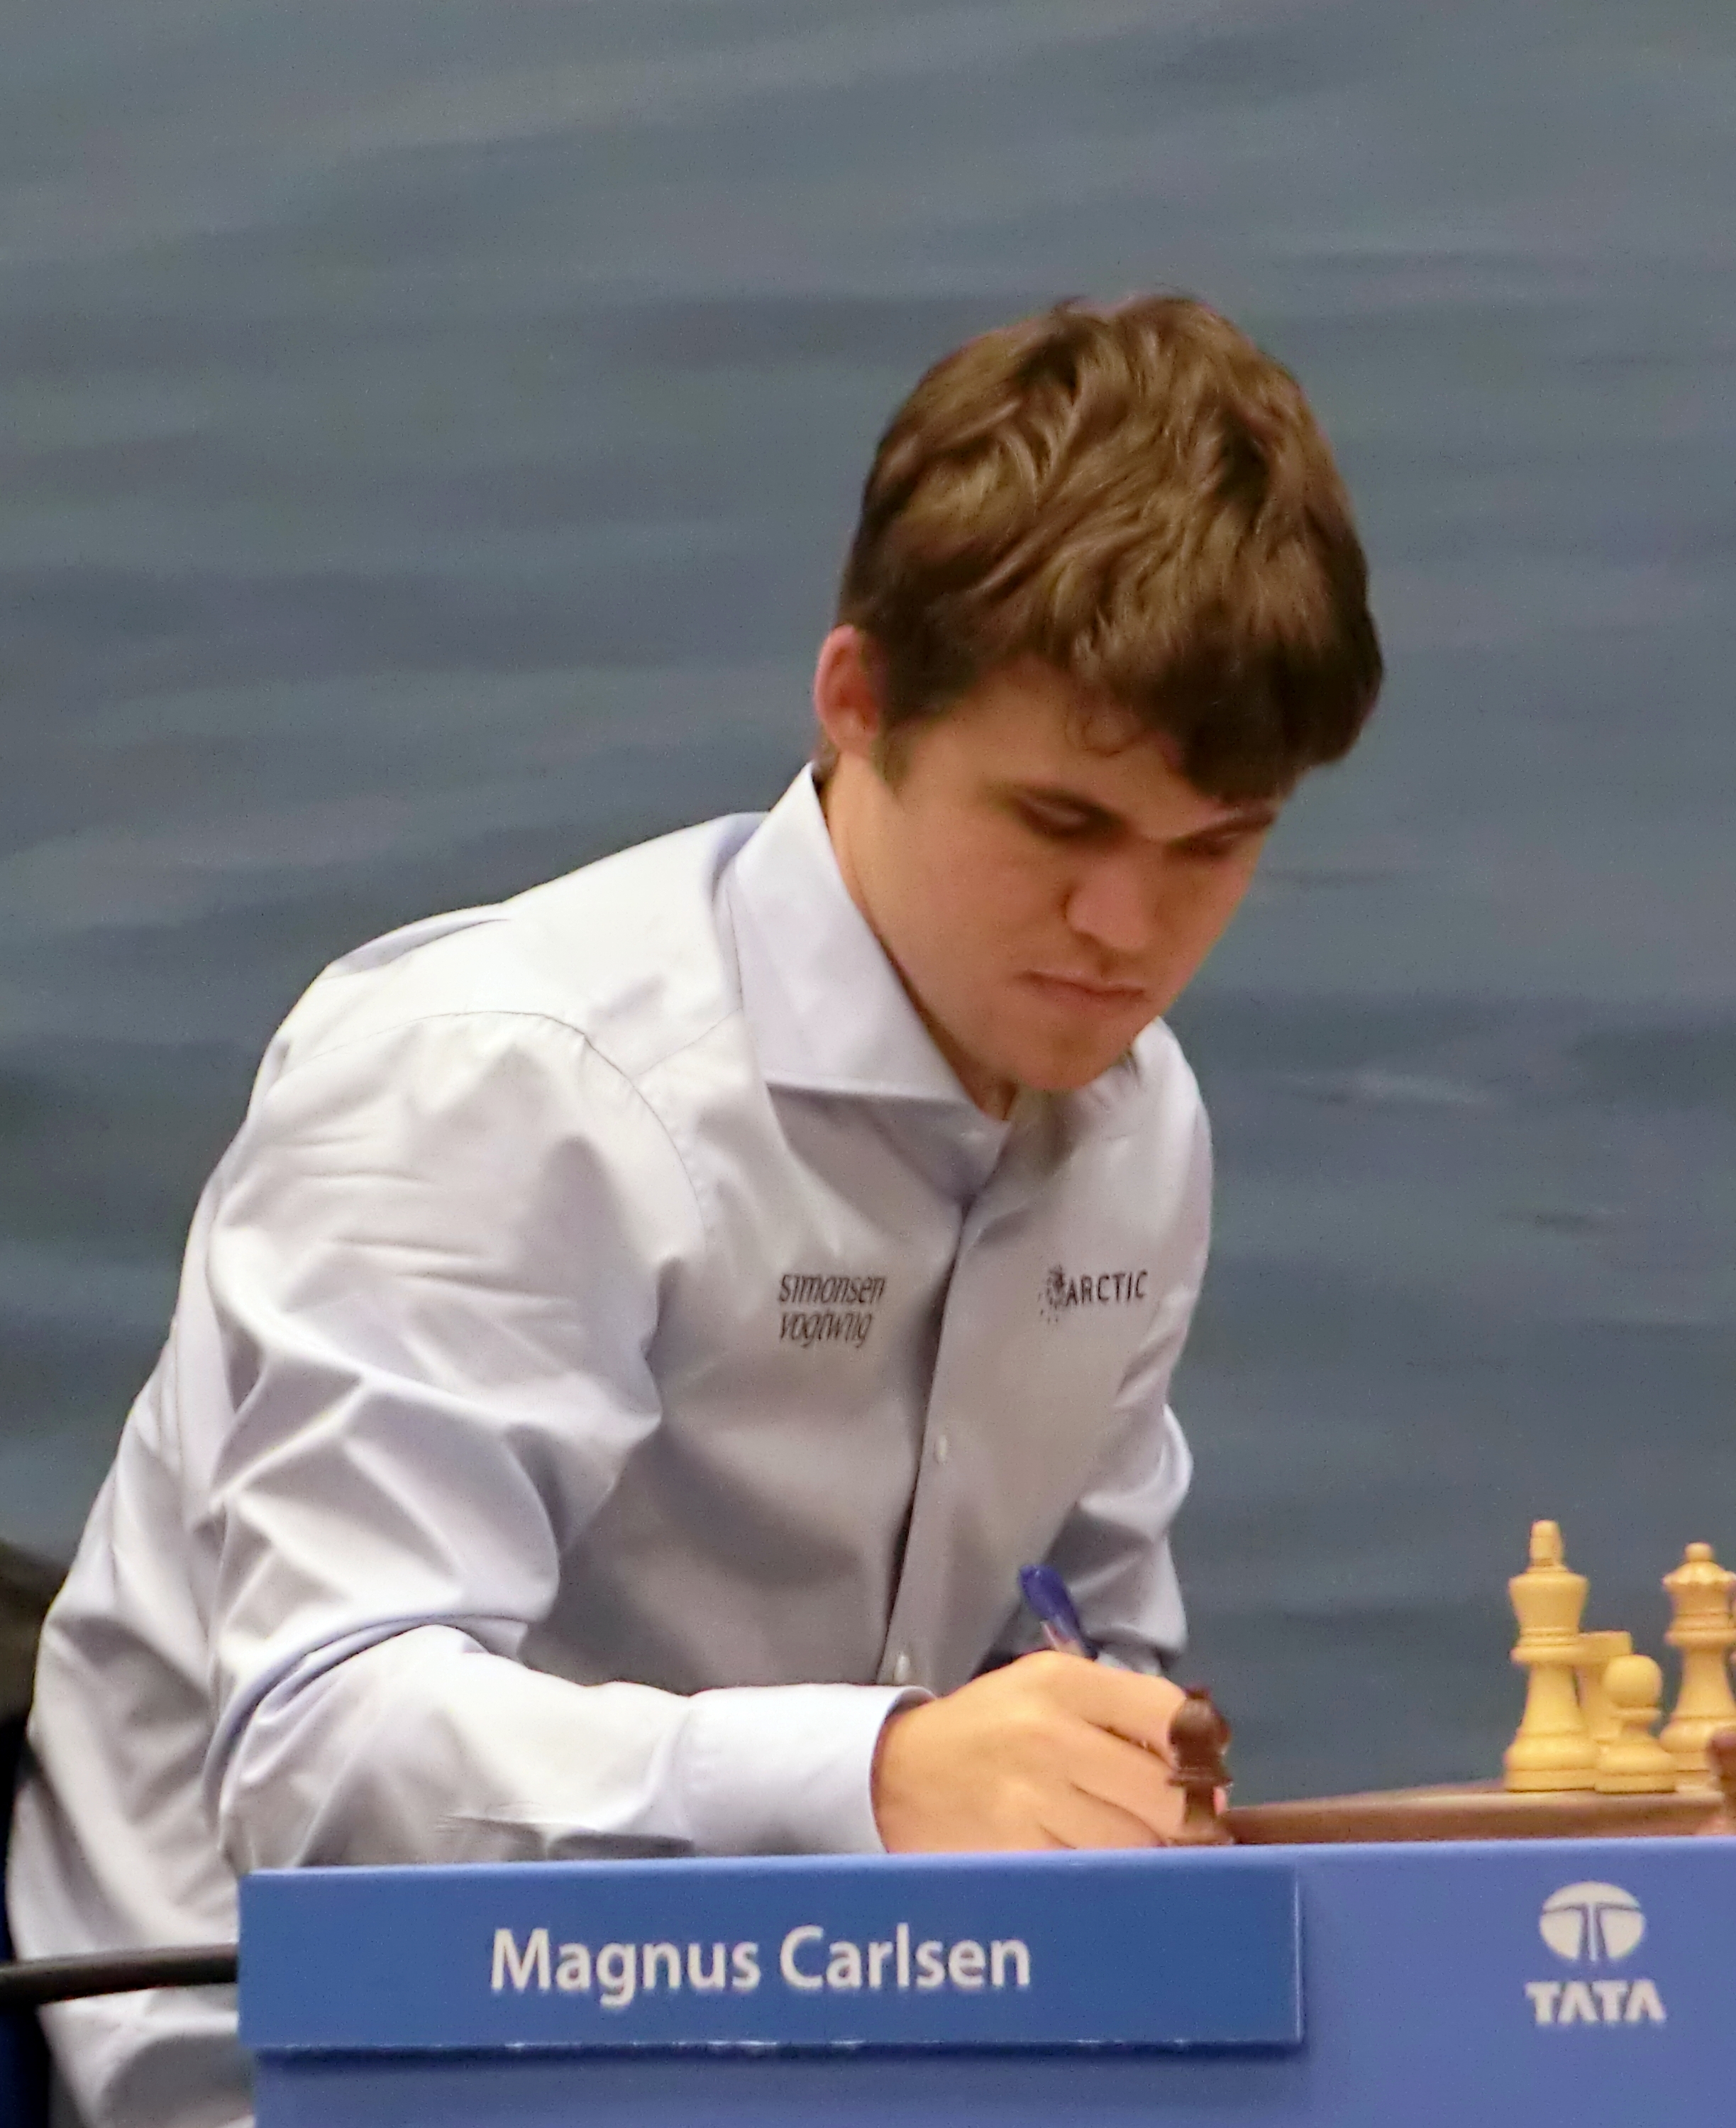 World Chess Championship 2014 - Wikipedia